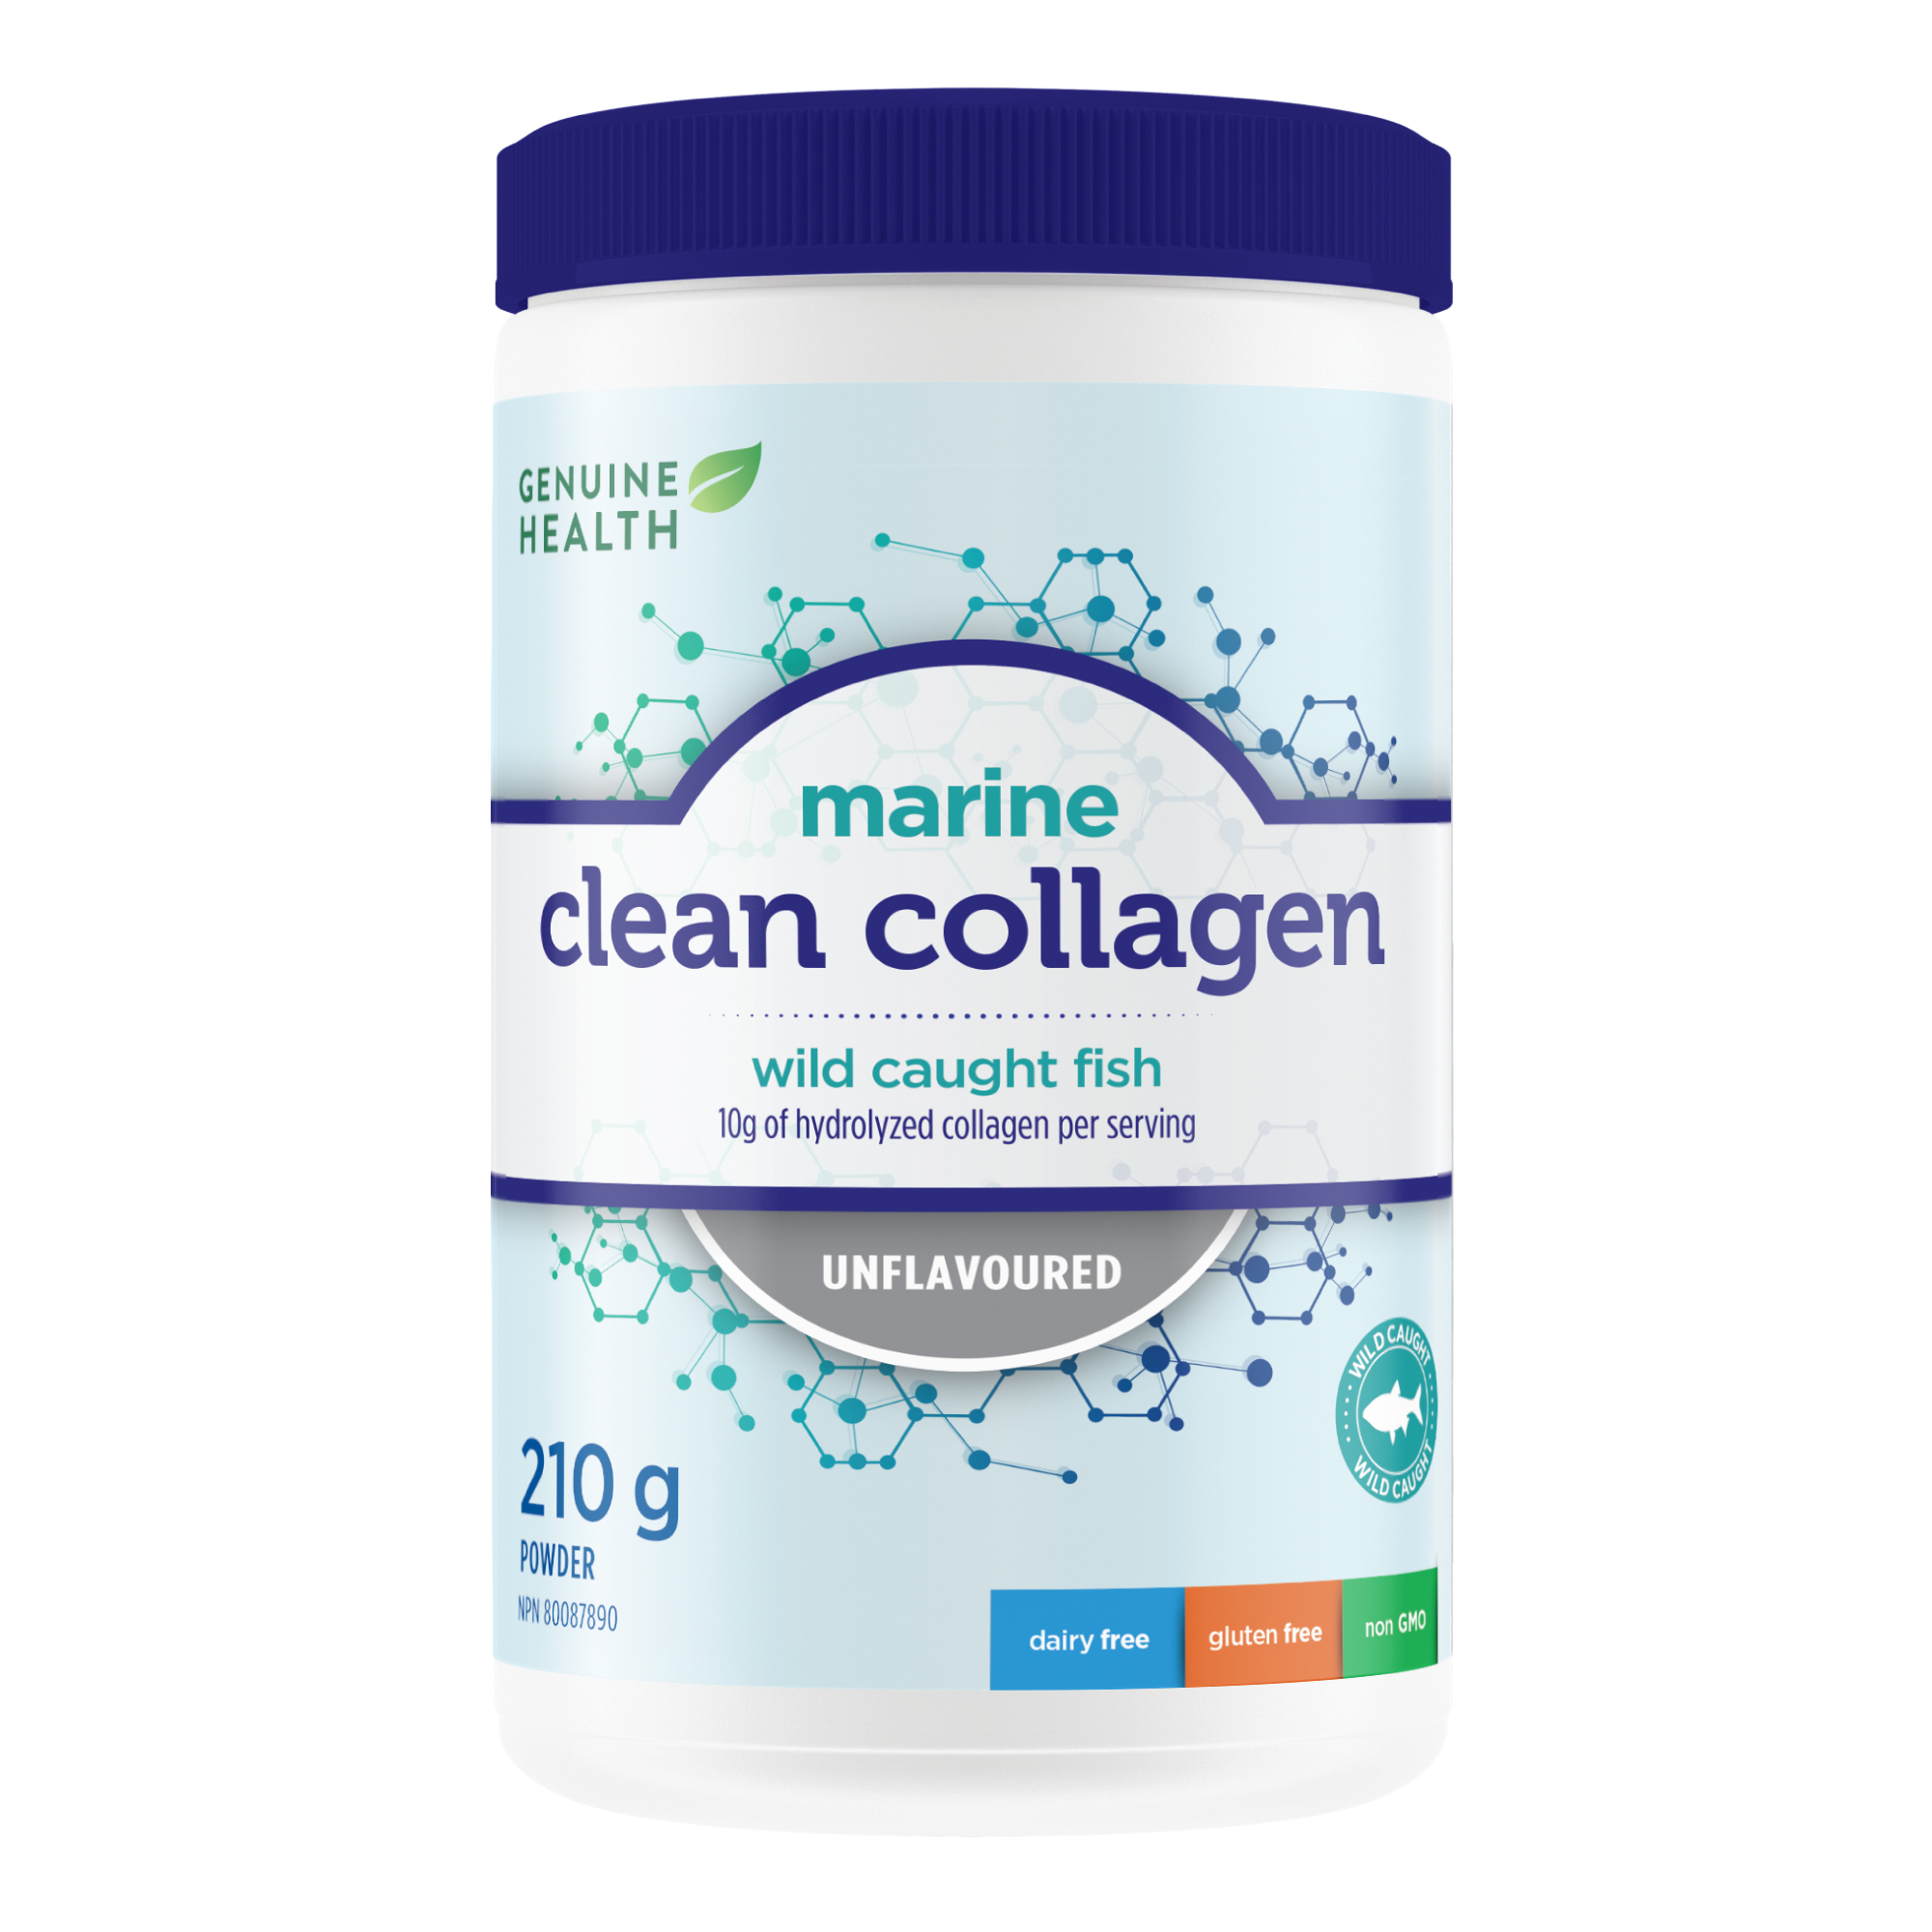 Genuine Health marine collagen unflavoured (140/210 g)